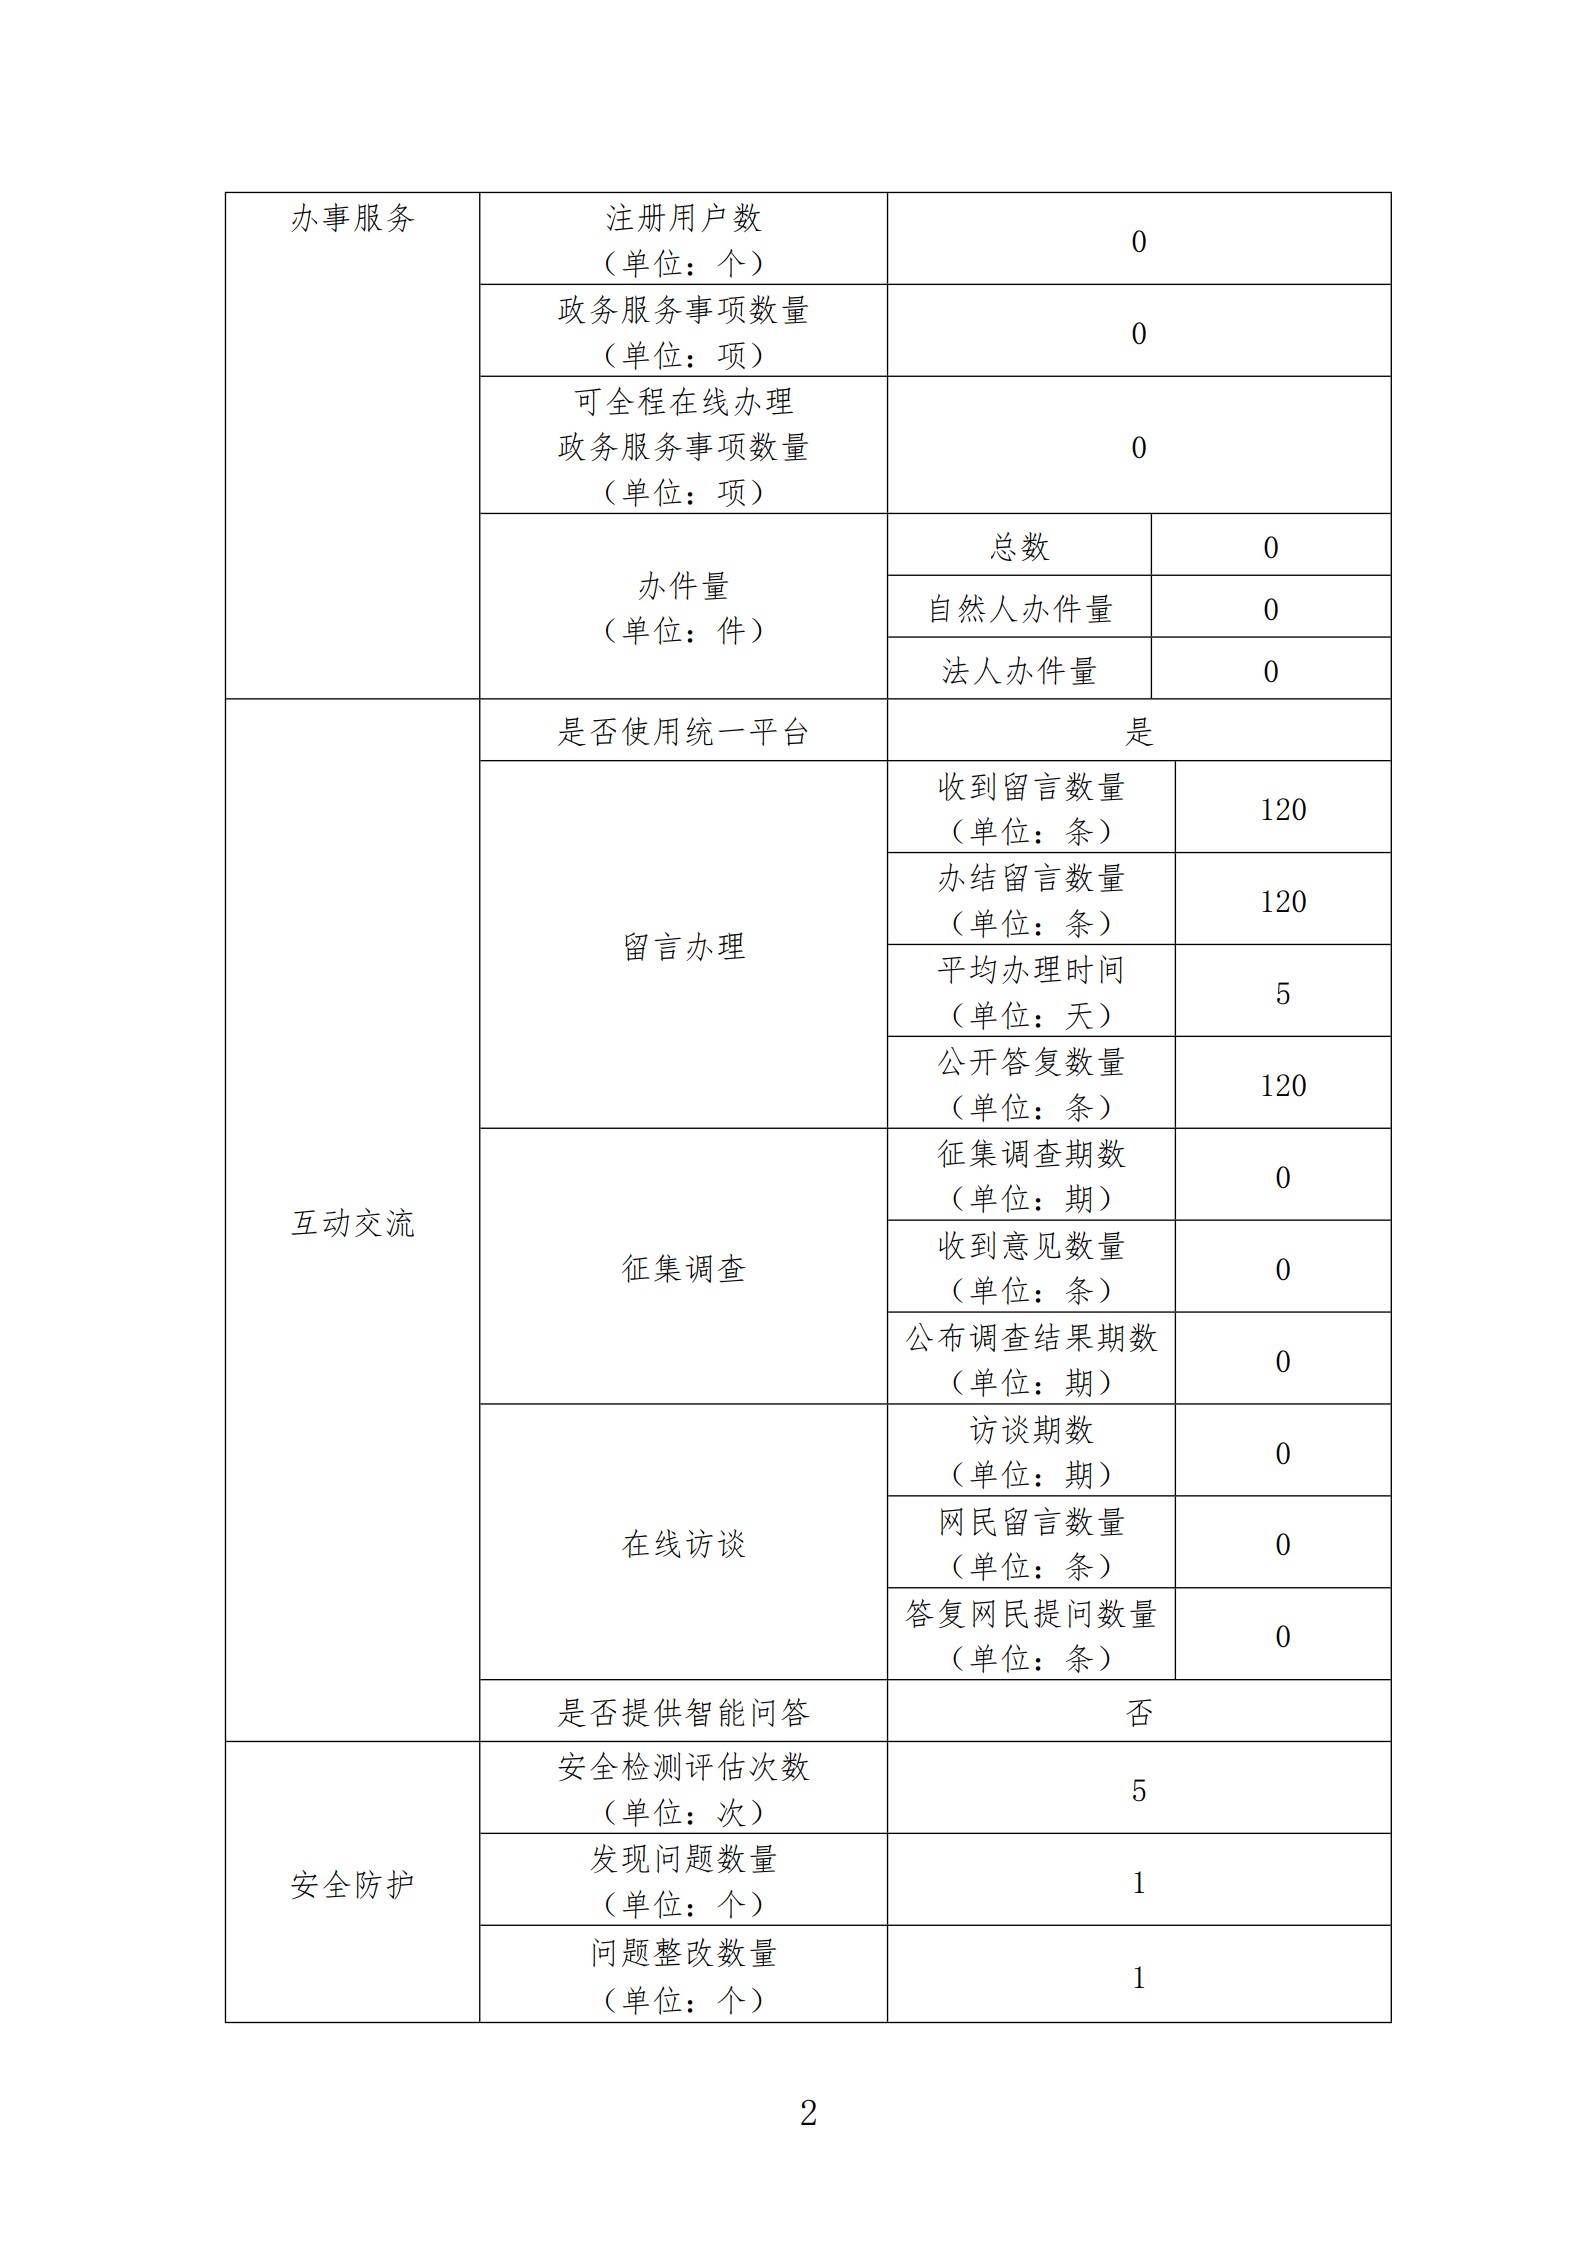 政府网站工作年度报表（陕西省能源局）_2.jpg